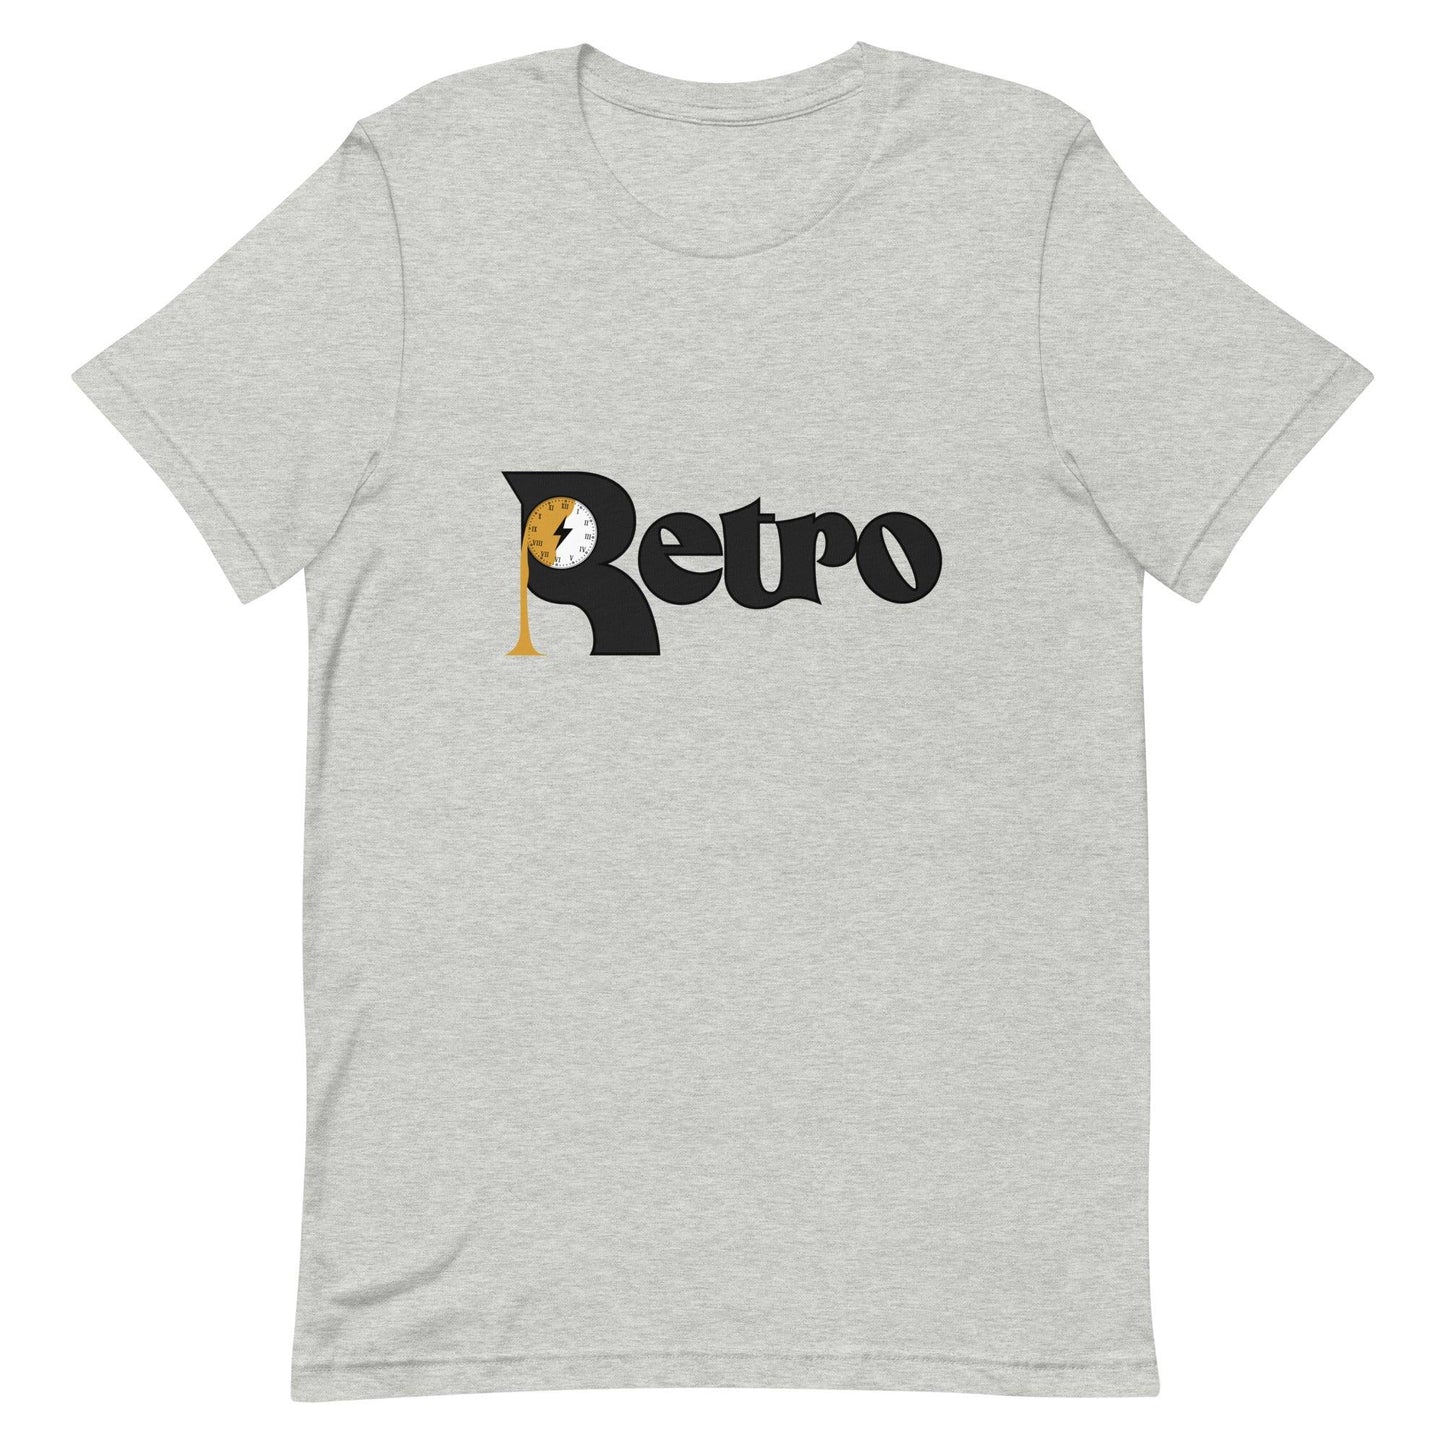 Joshua Roberts "Retro" t-shirt - Fan Arch